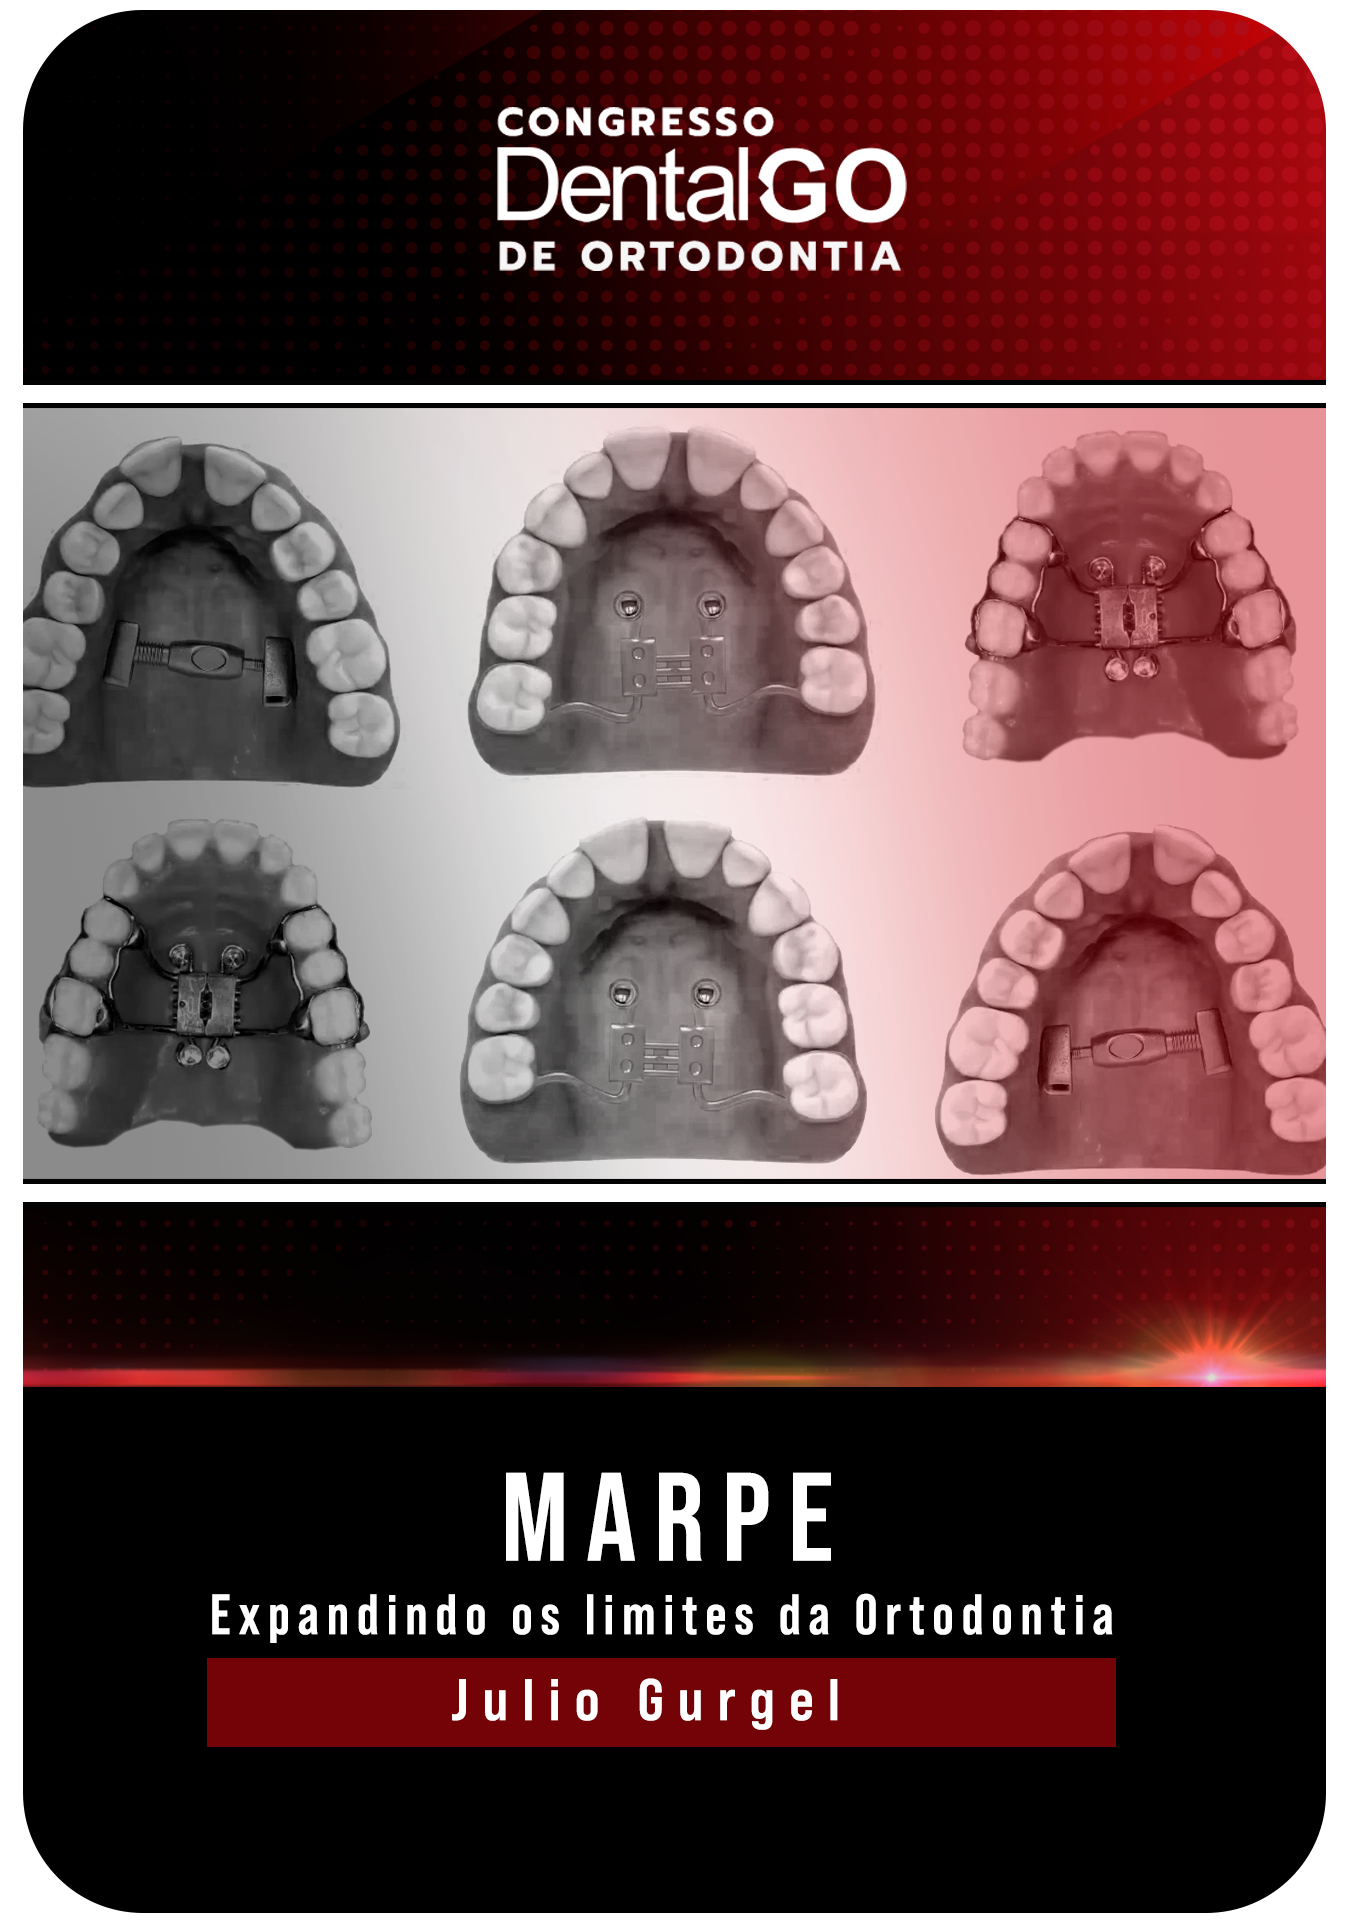 Julio Gurgel - MARPE - Expandindo os limites da Ortodontia